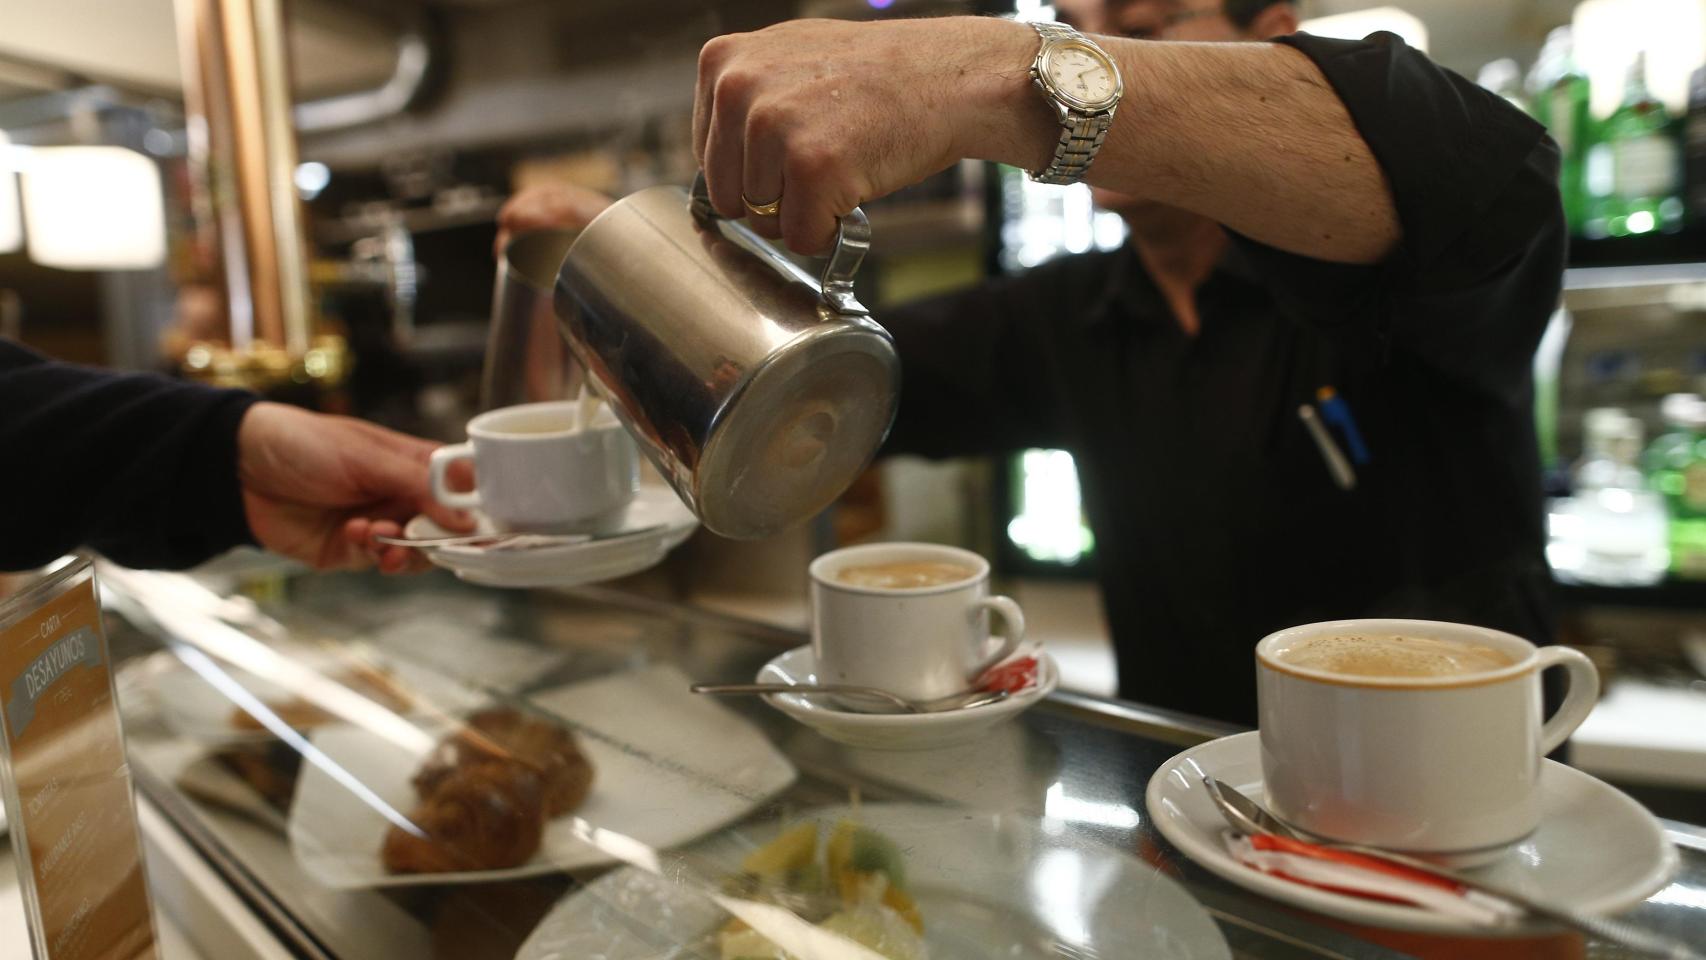 Un camarero sirviendo un café, en una imagen de archivo.